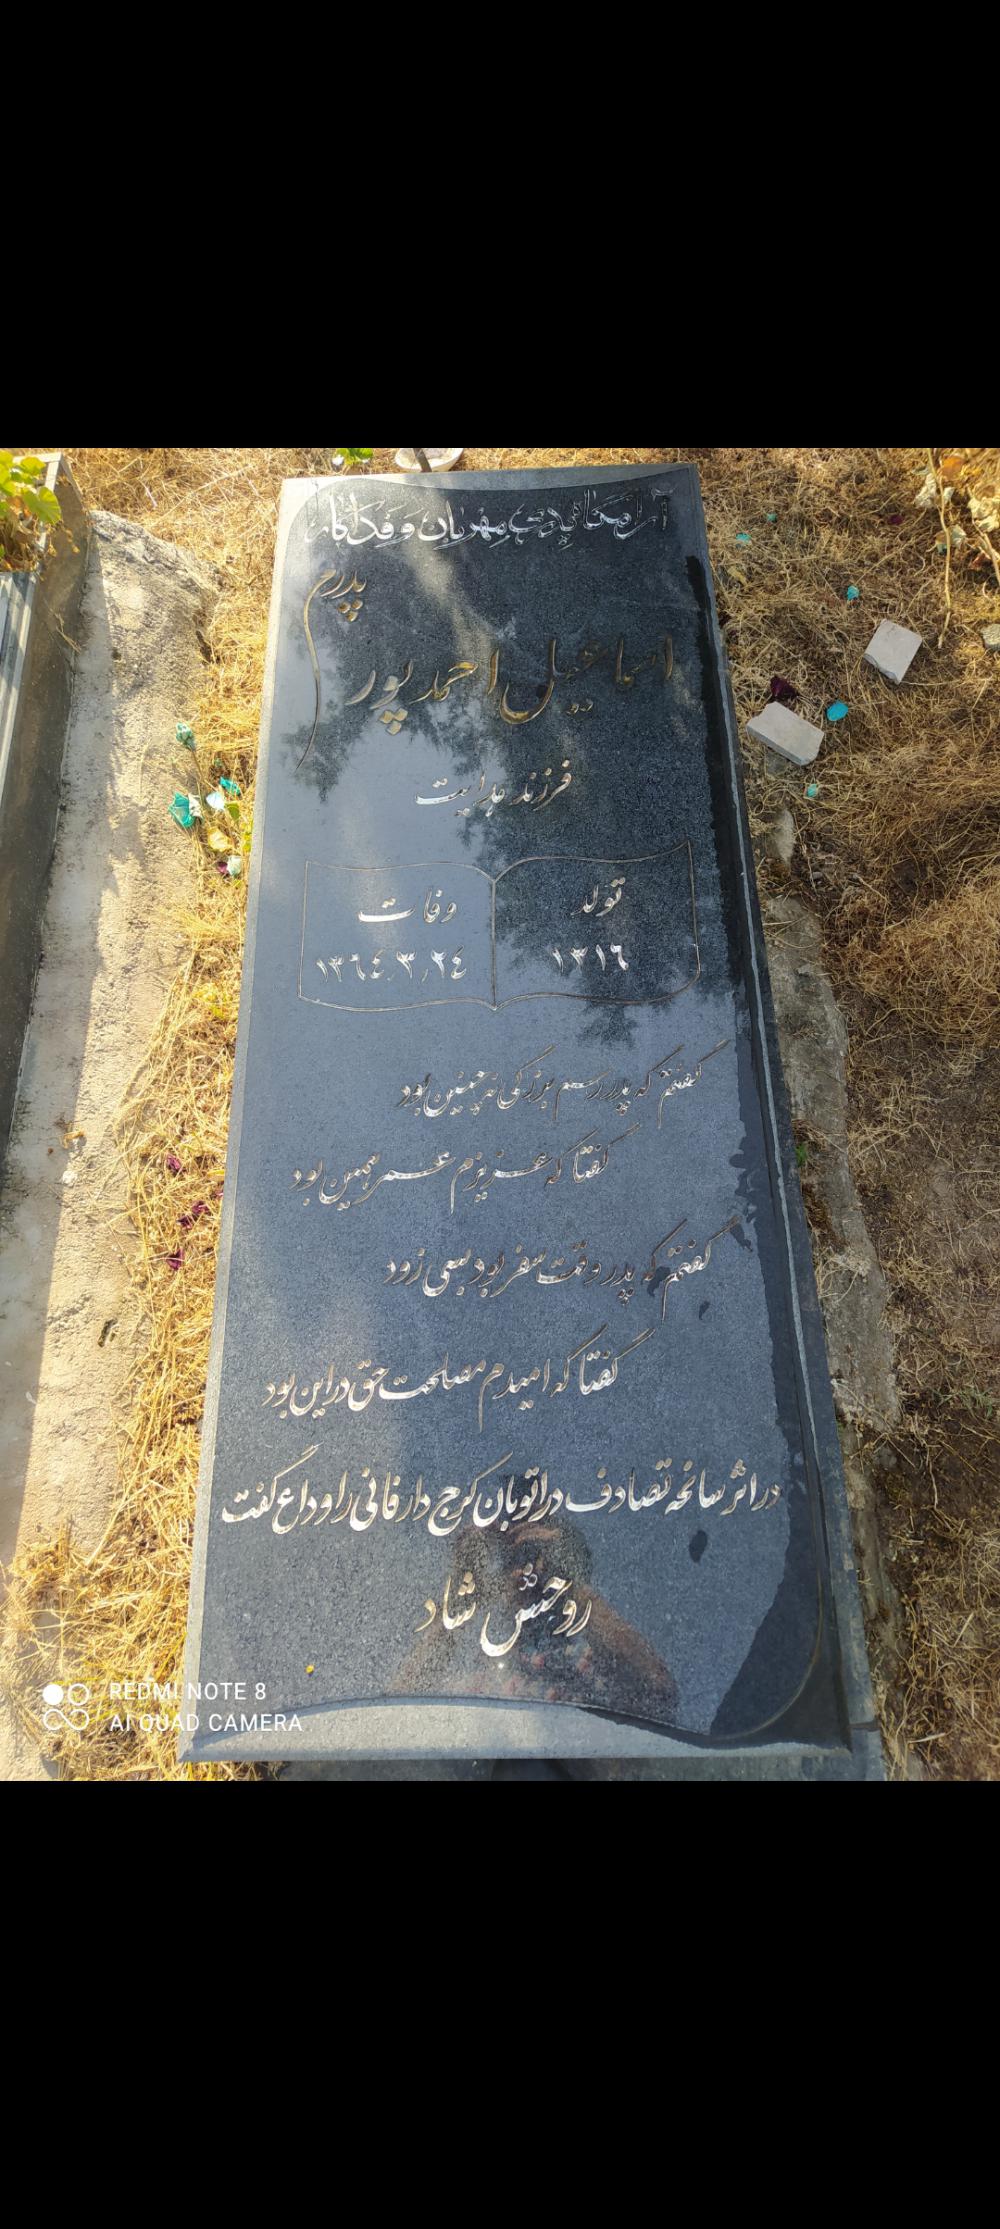 یادبود شادروان اسماعیل احمدپور